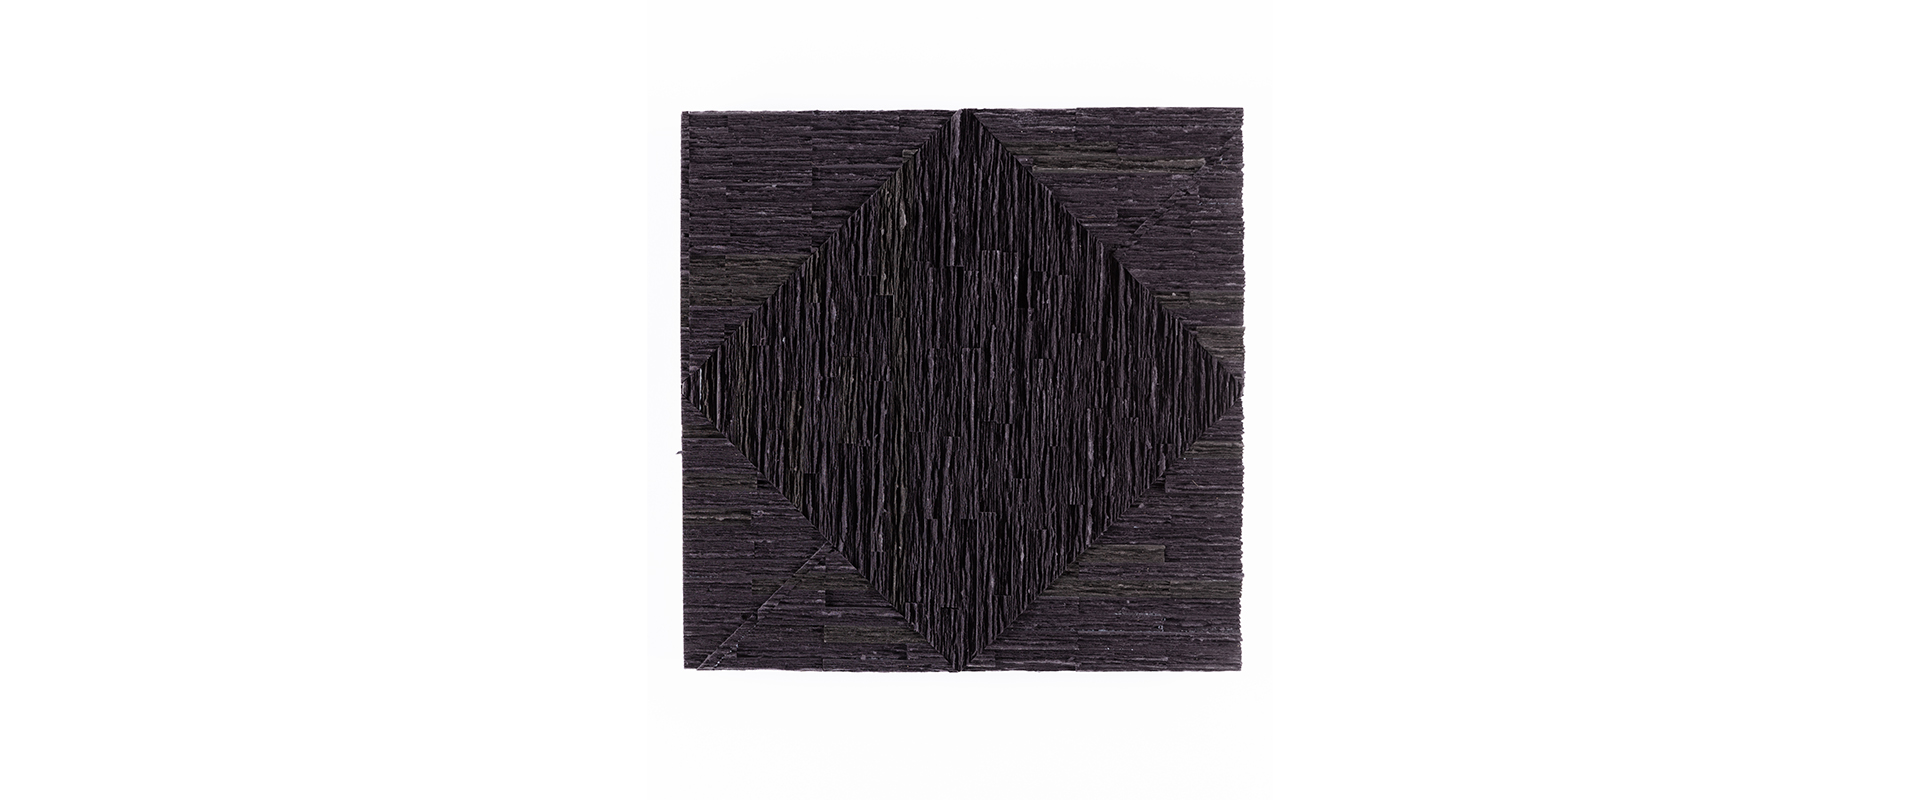 Ohne Titel (#123) - 2021, MDF schwarz, gebrochen, geleimt, 33 x 33 x 4,5 cm